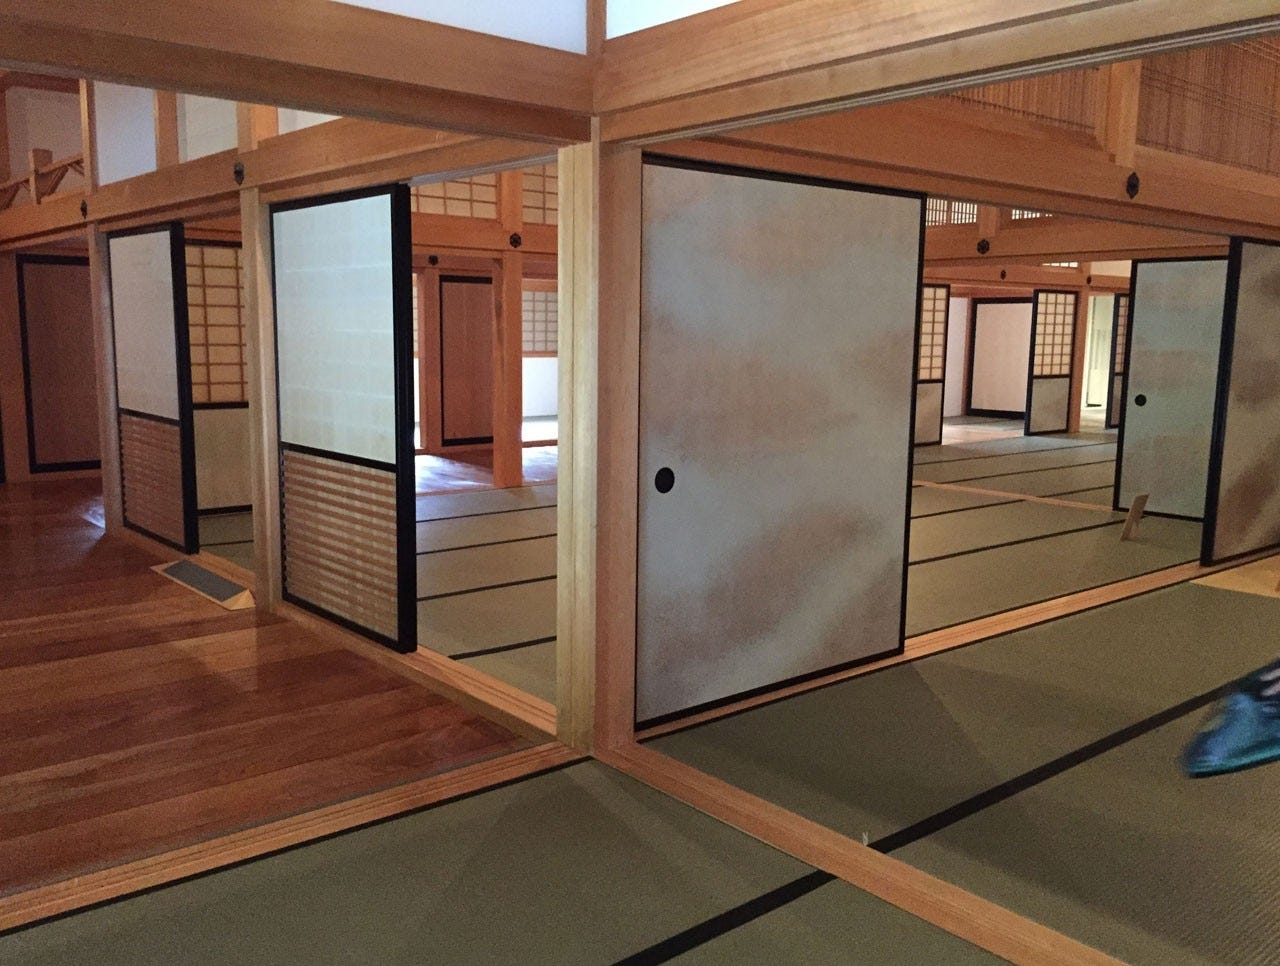 Oya-ishi – Oya Stone: Veronika Spierenburg's architectural journey to Japan